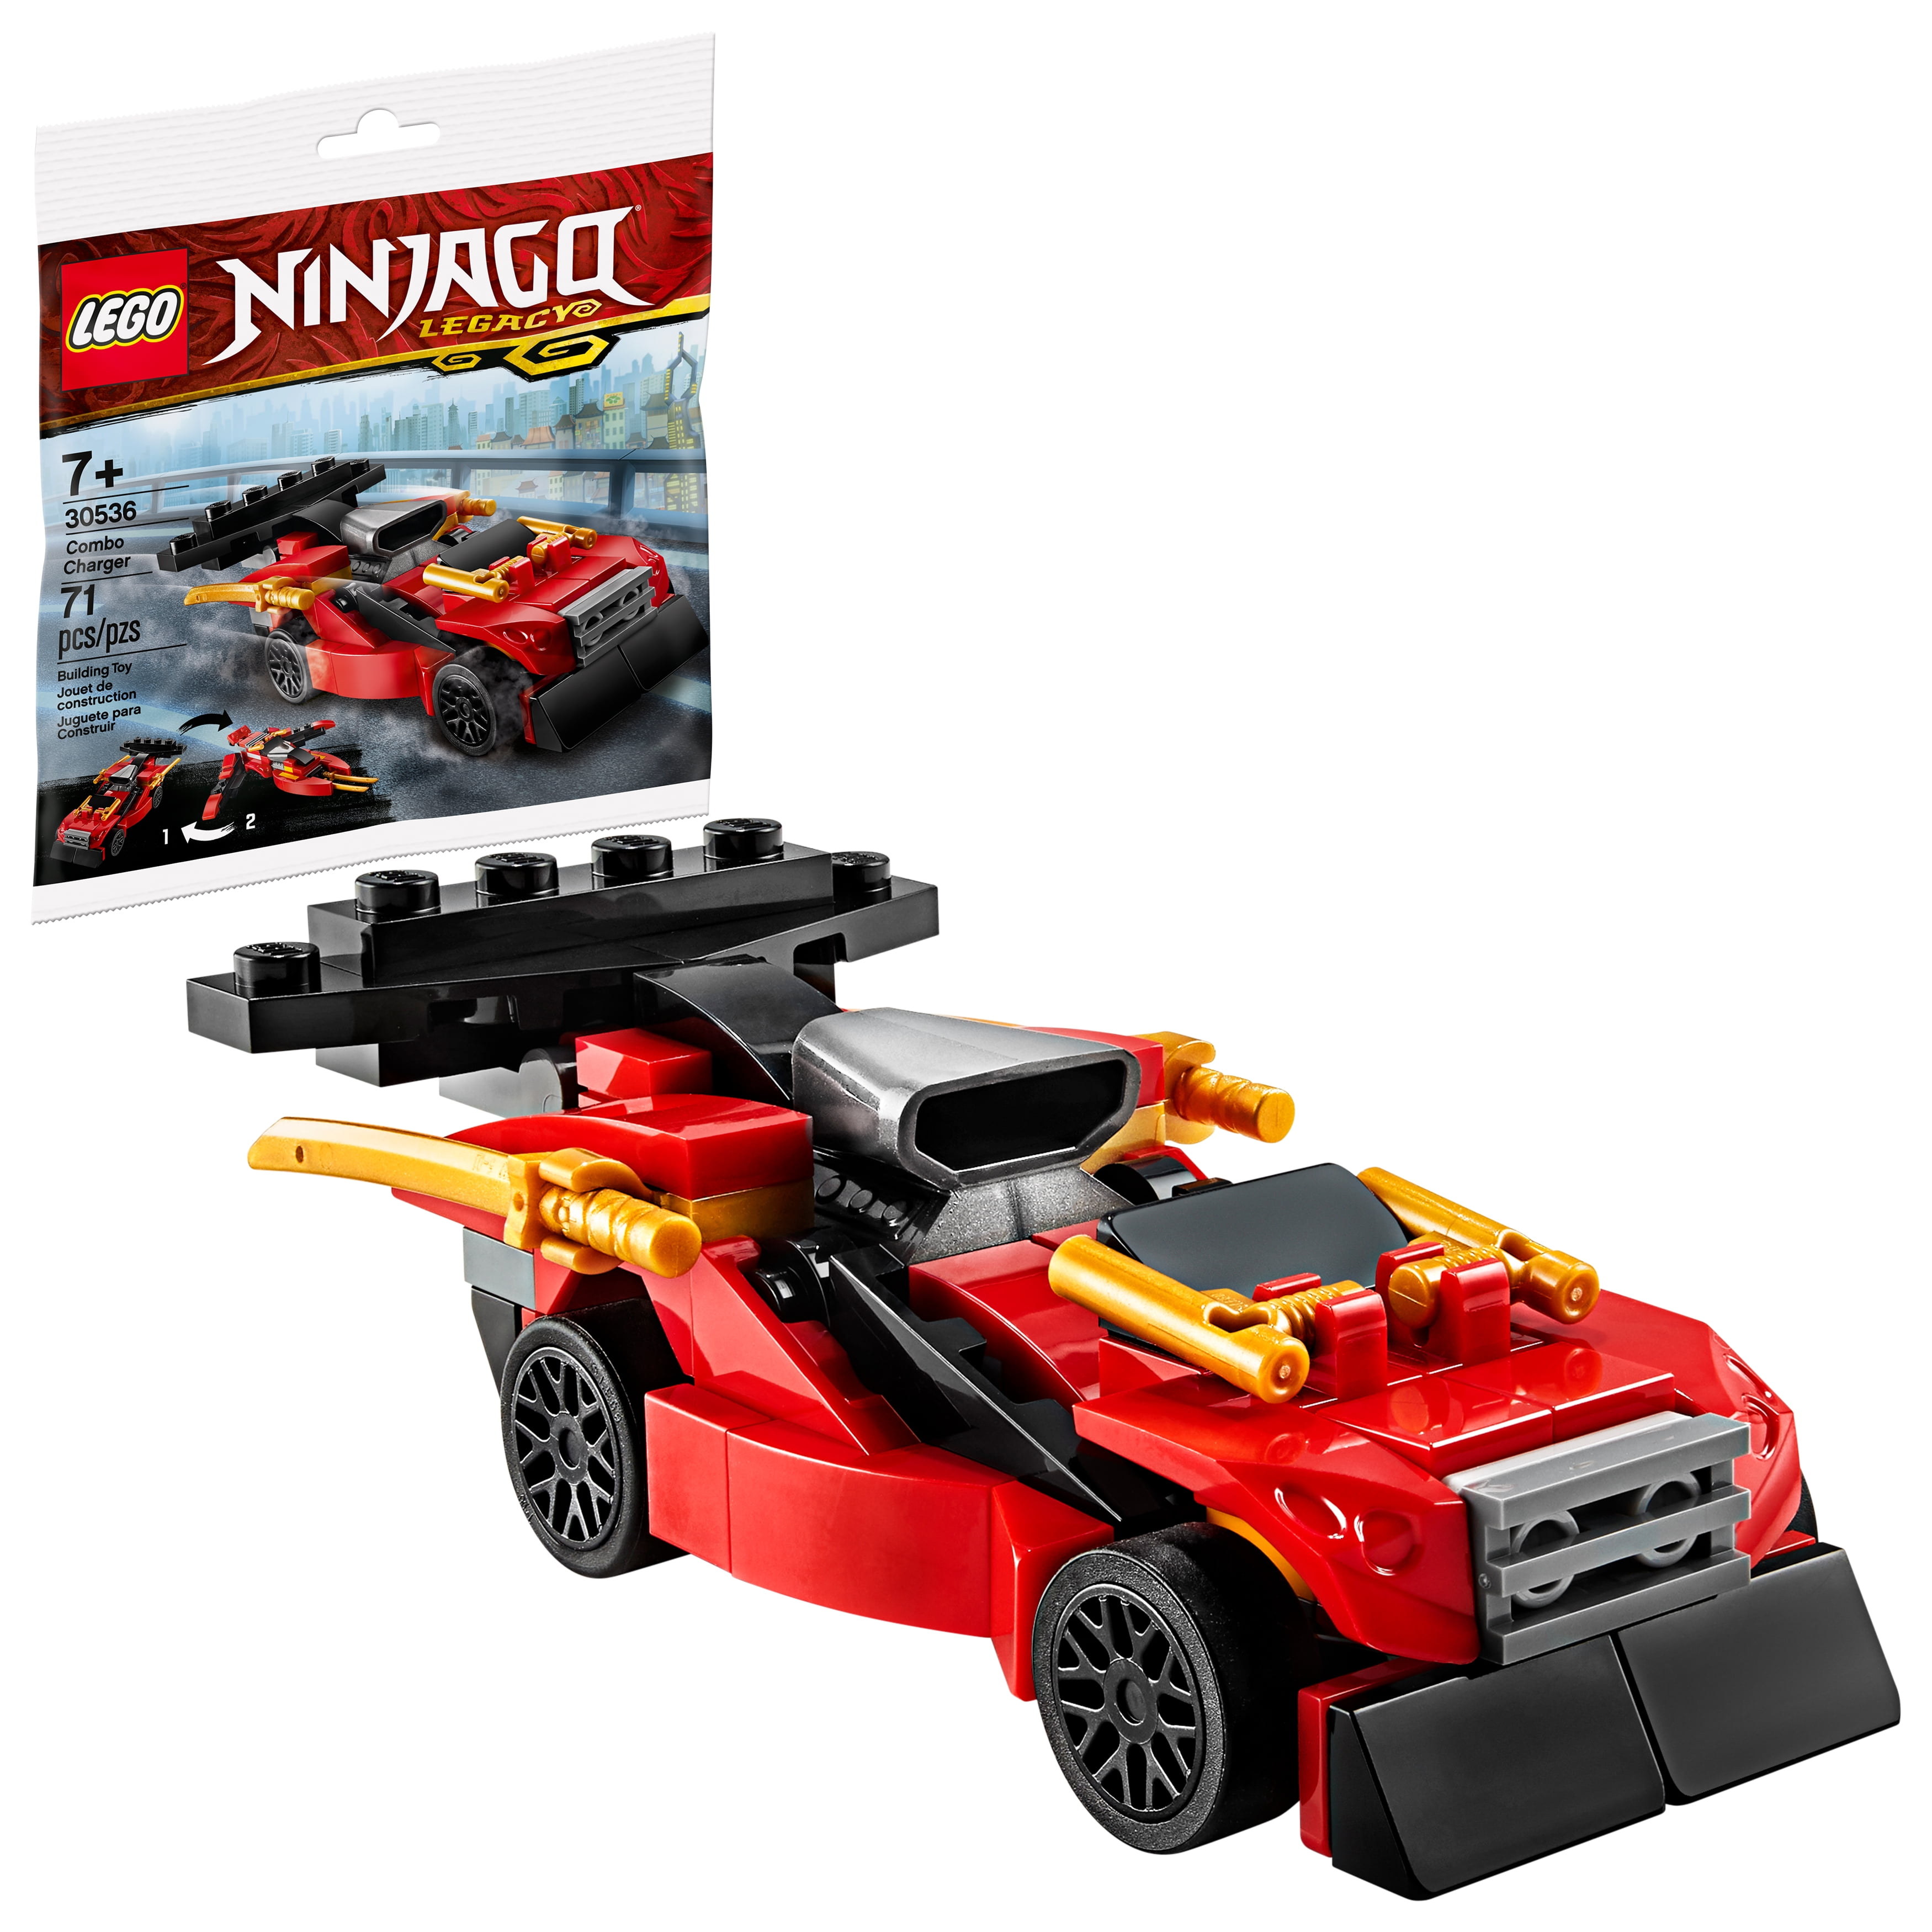 zacht Onveilig Op tijd LEGO Ninjago Combo Charger 30536 Building Set (71 Pieces) - Walmart.com